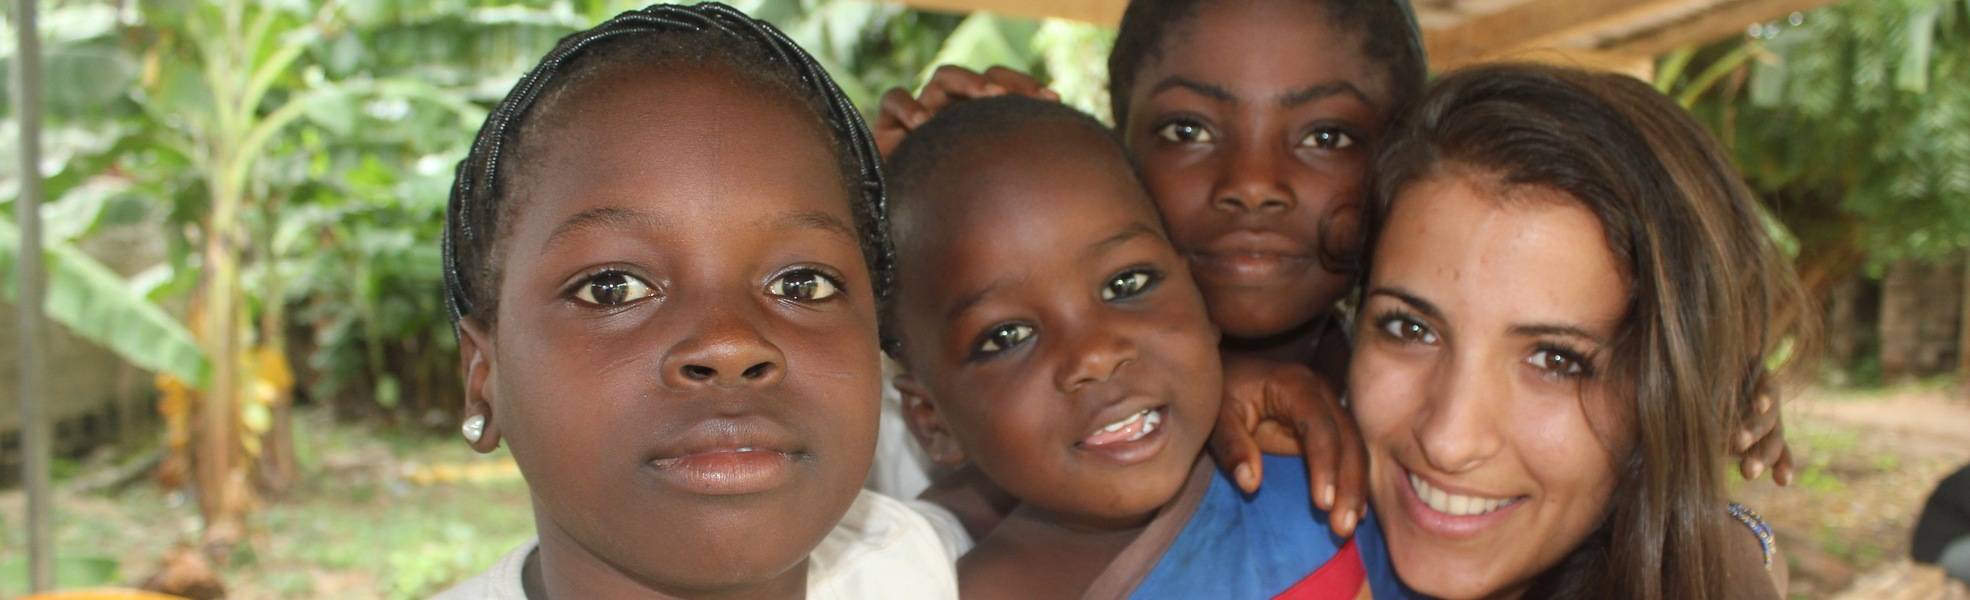 Volunteer work in street children project in Ghana